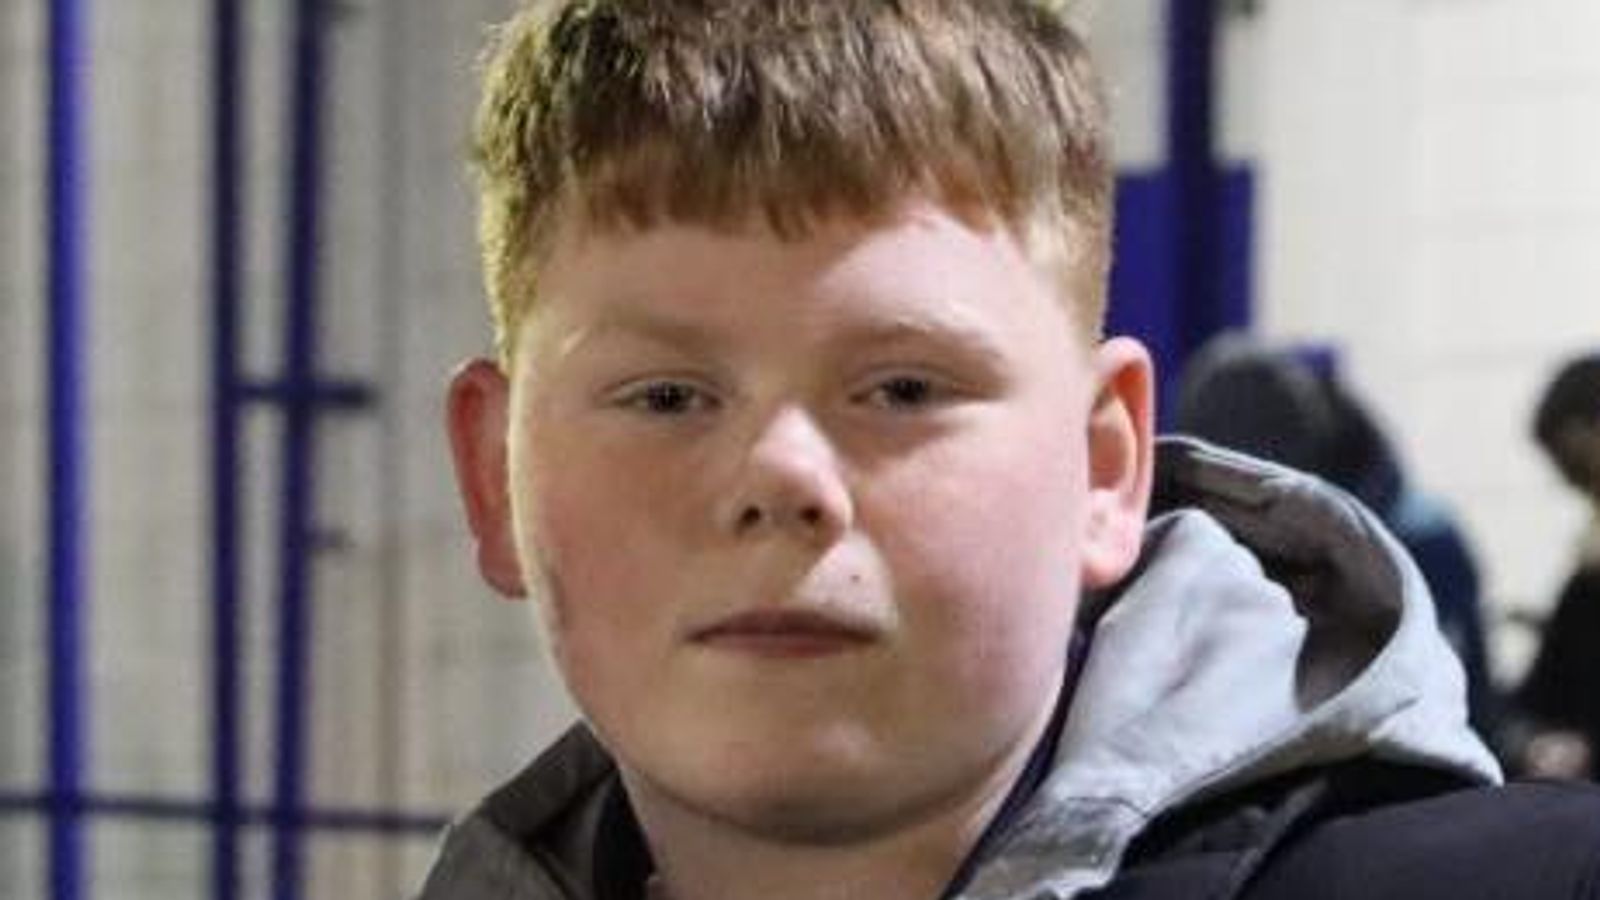 Поножовщина в Лидсе: подростку предъявлено обвинение в убийстве 15-летнего Алфи Льюиса |  Новости Великобритании